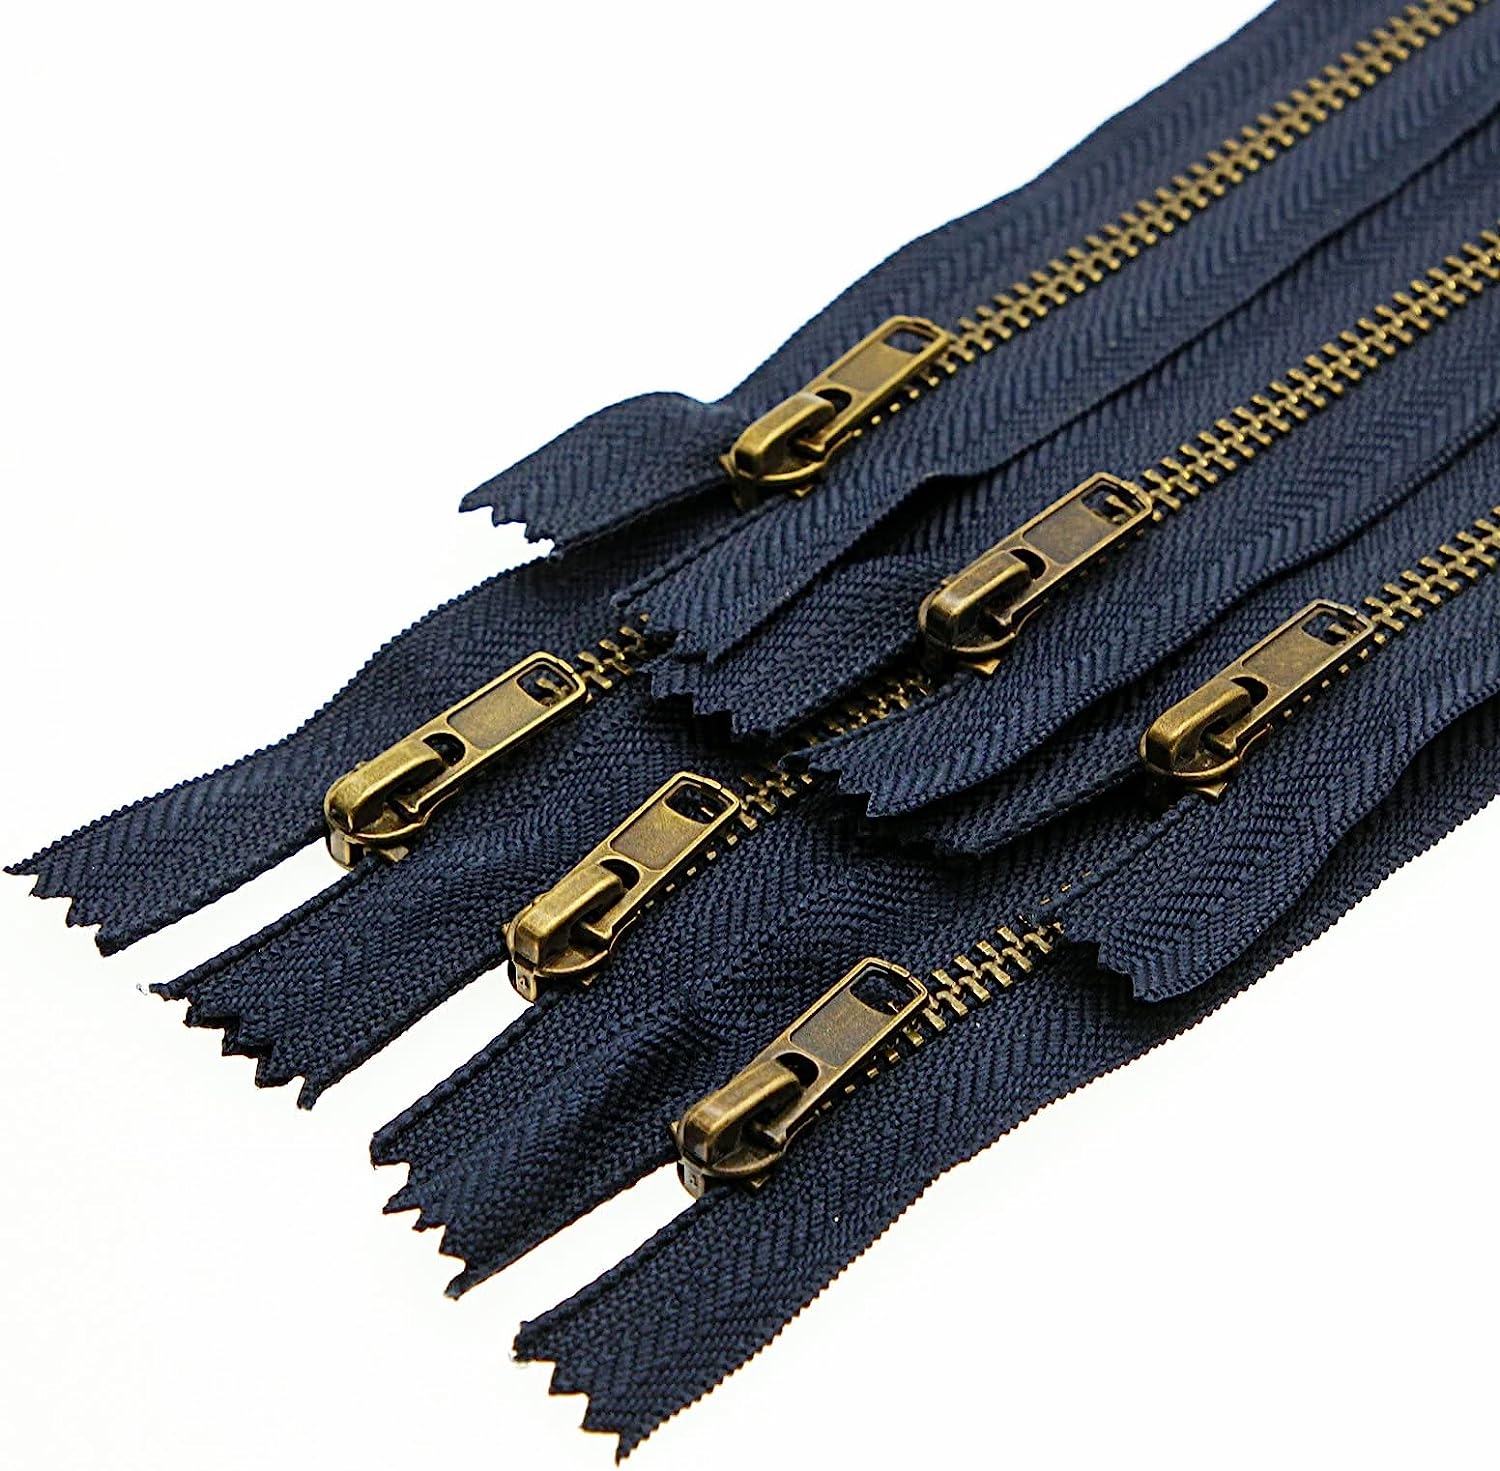 4 9 Inch Metal Zipper Close End Zipper Navy 23 cm Brass Zipper for Sewing Jeans Crafts Bag Pocket Pack of 6 pcs Leekayer  